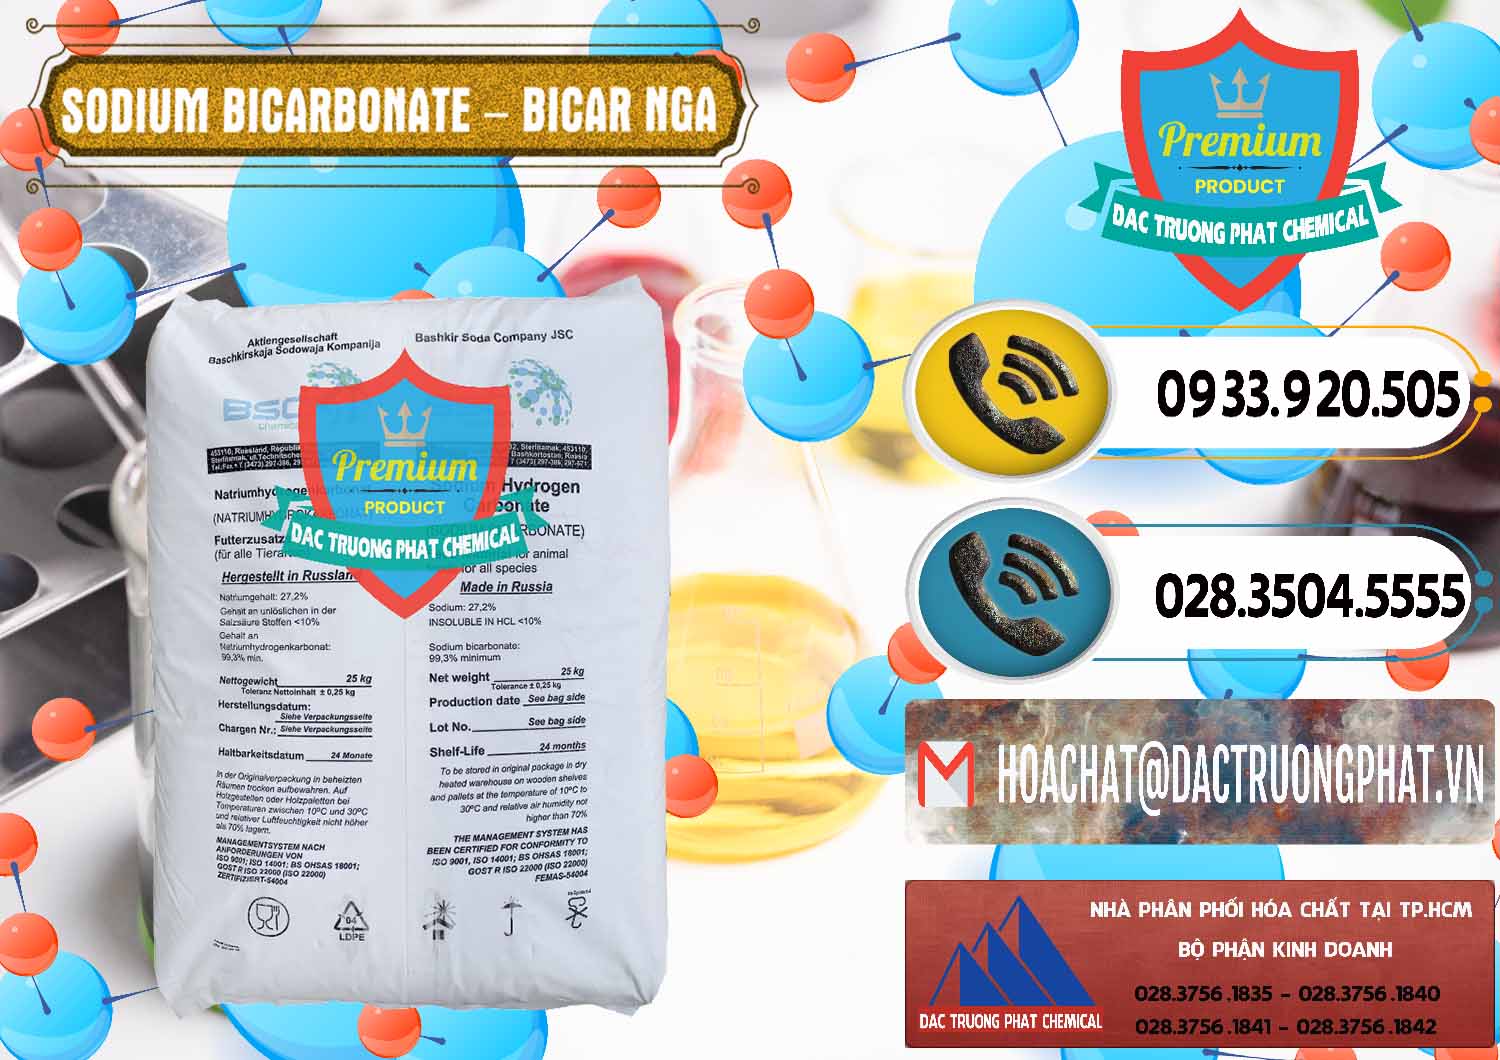 Cty chuyên bán và phân phối Sodium Bicarbonate – Bicar NaHCO3 Nga Russia - 0425 - Nhà cung cấp và bán hóa chất tại TP.HCM - hoachatdetnhuom.vn